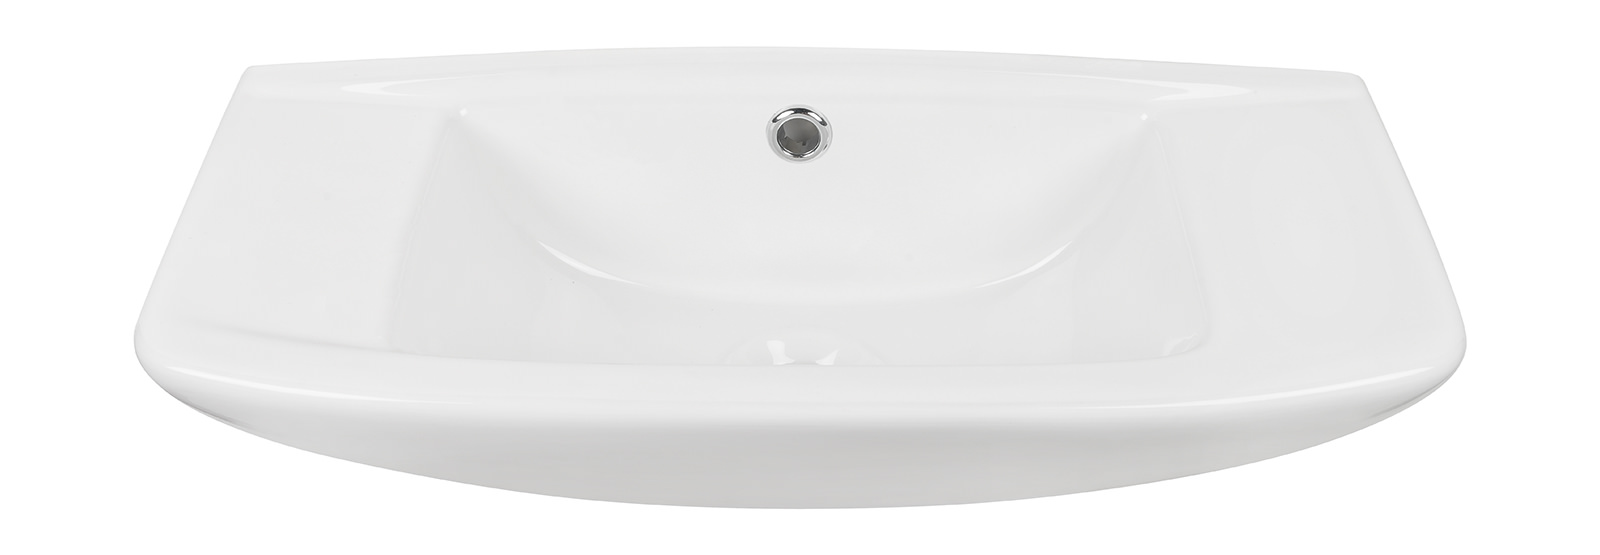 Handwaschbecken 04AB3488 in Weiß, 50 cm